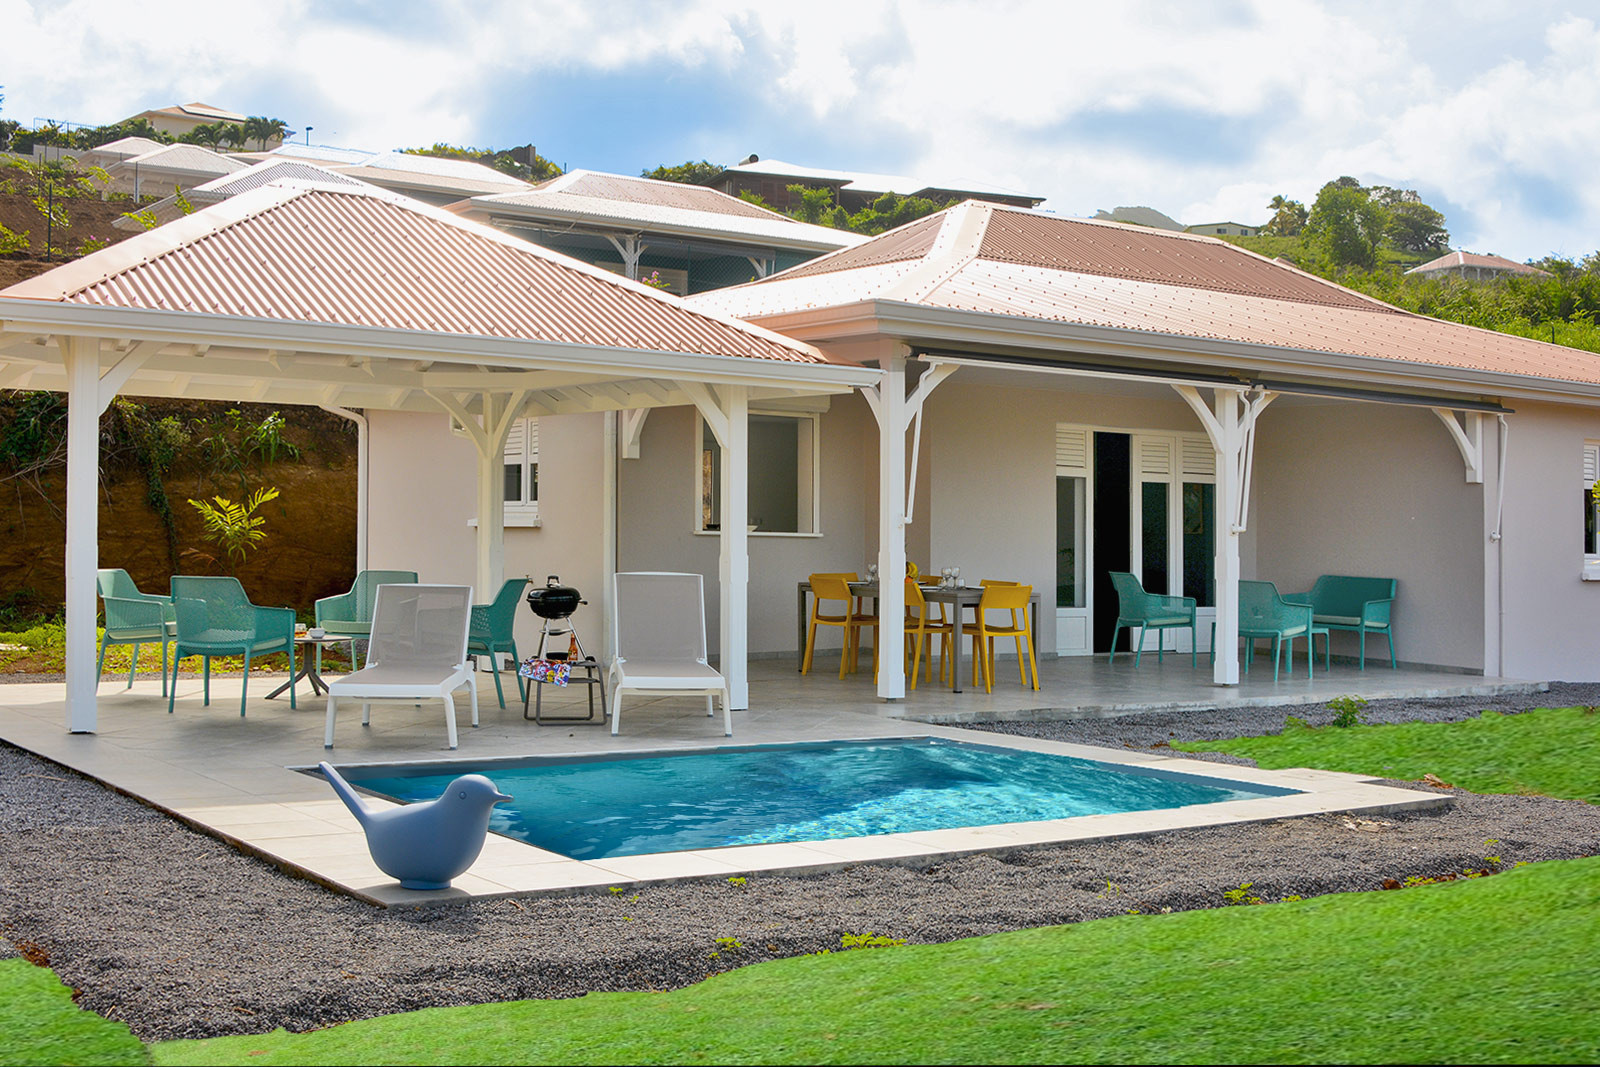 DAME DU LAC I location maison vacances Martinique le Vauclin piscine - La première Dame du Lac